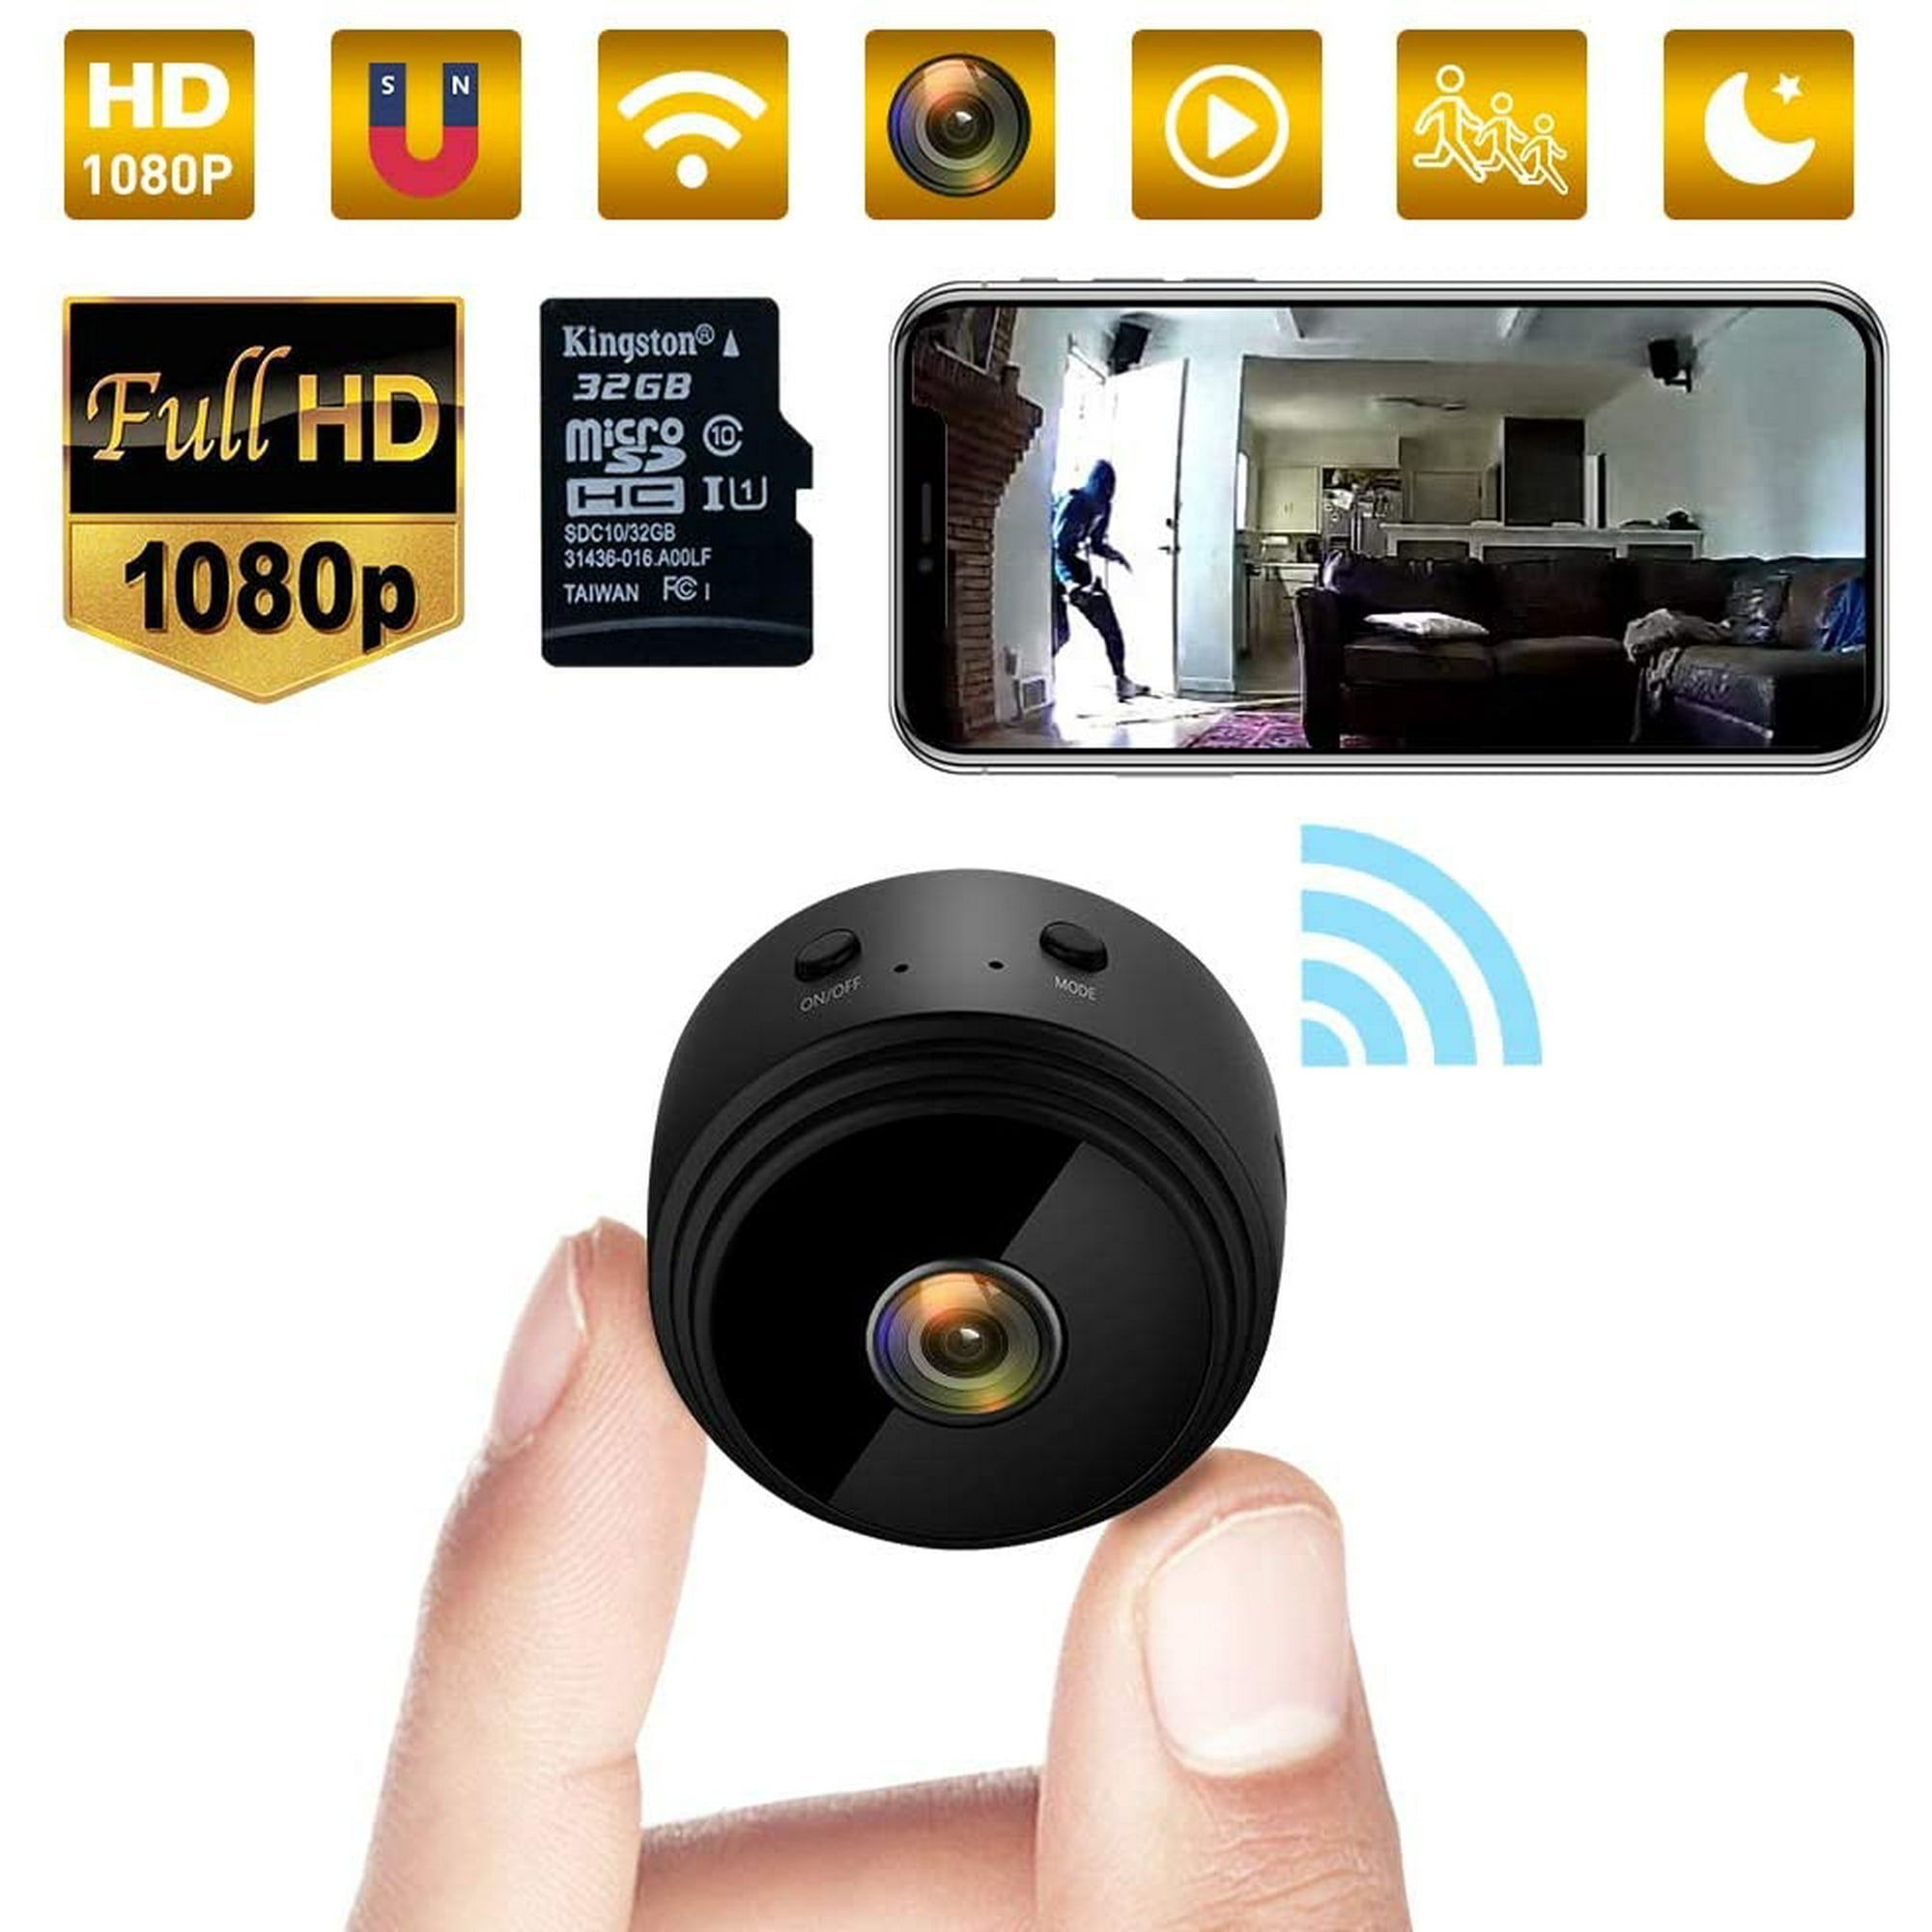 Mini cámara espía con base, cámara de vigilancia WiFi, cámara espía  inalámbrica Full HD 1080P niñera de movimiento oculto con visión nocturna y  detector de movimiento, cámara exterior / interior (blanco)